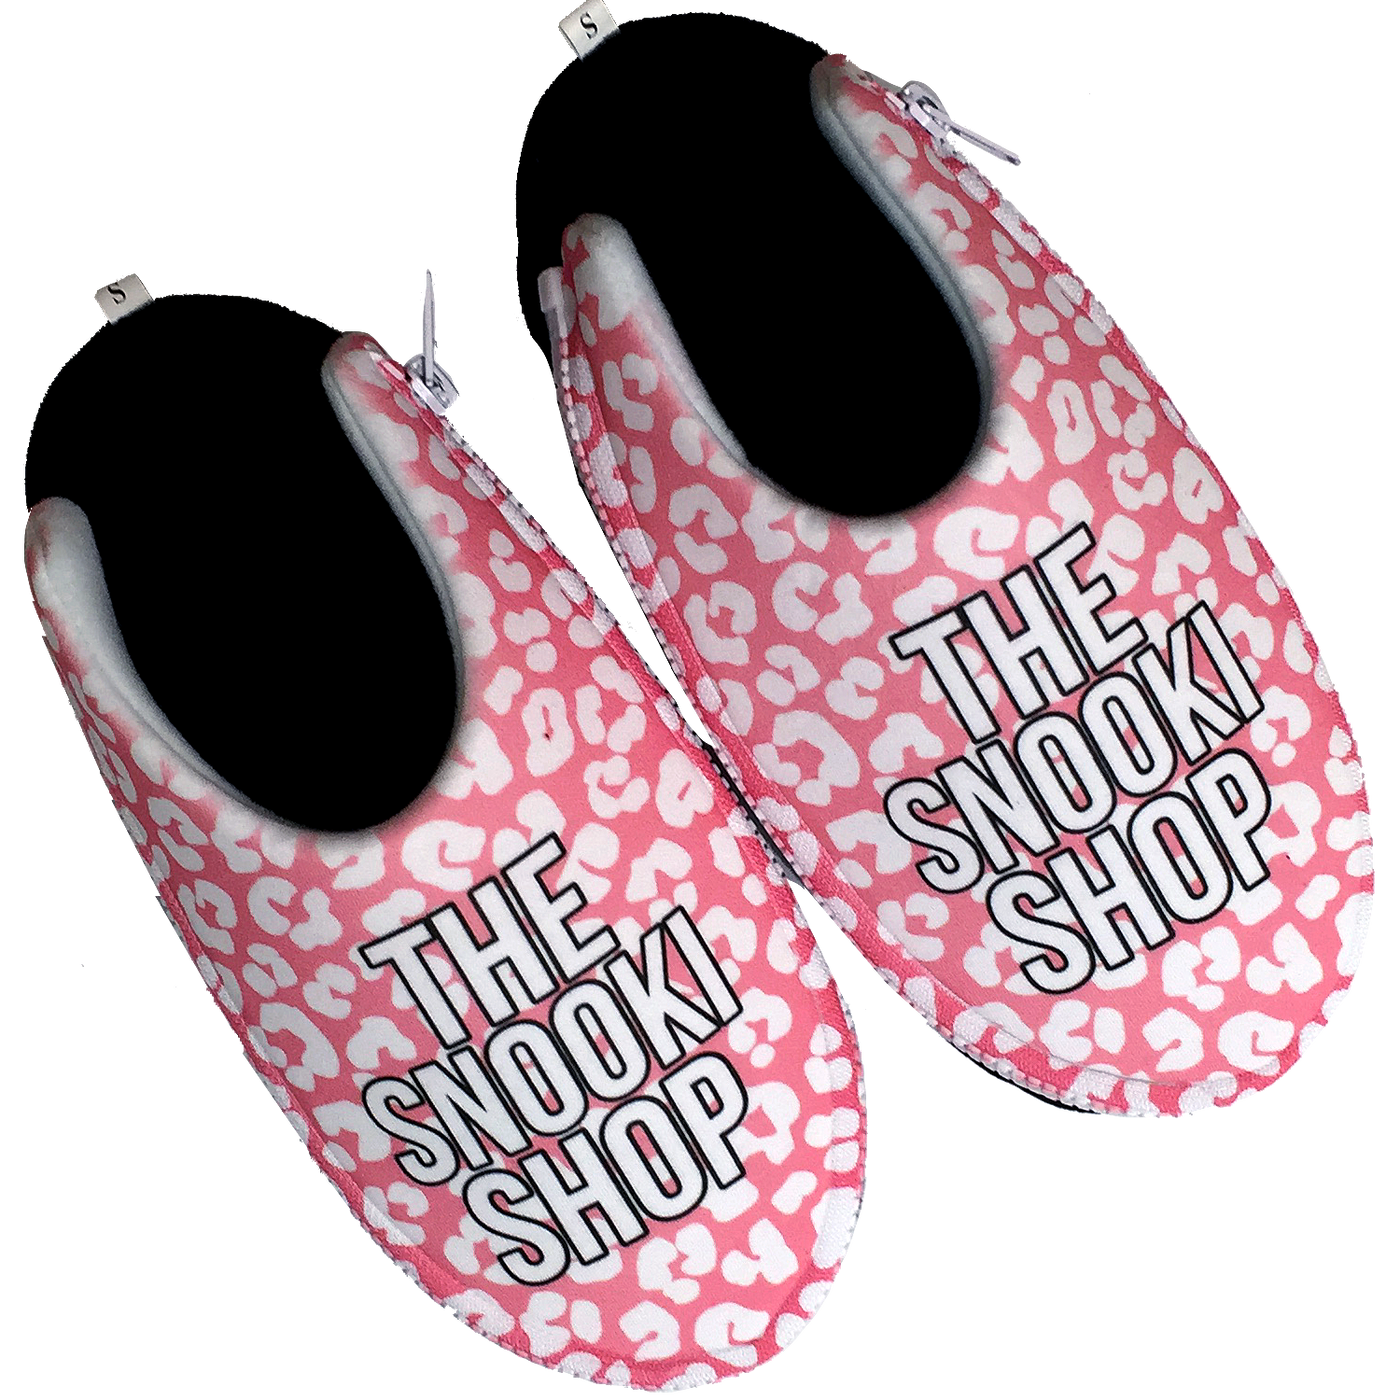 The Snooki Shop Zlipperz - Pink Leopard